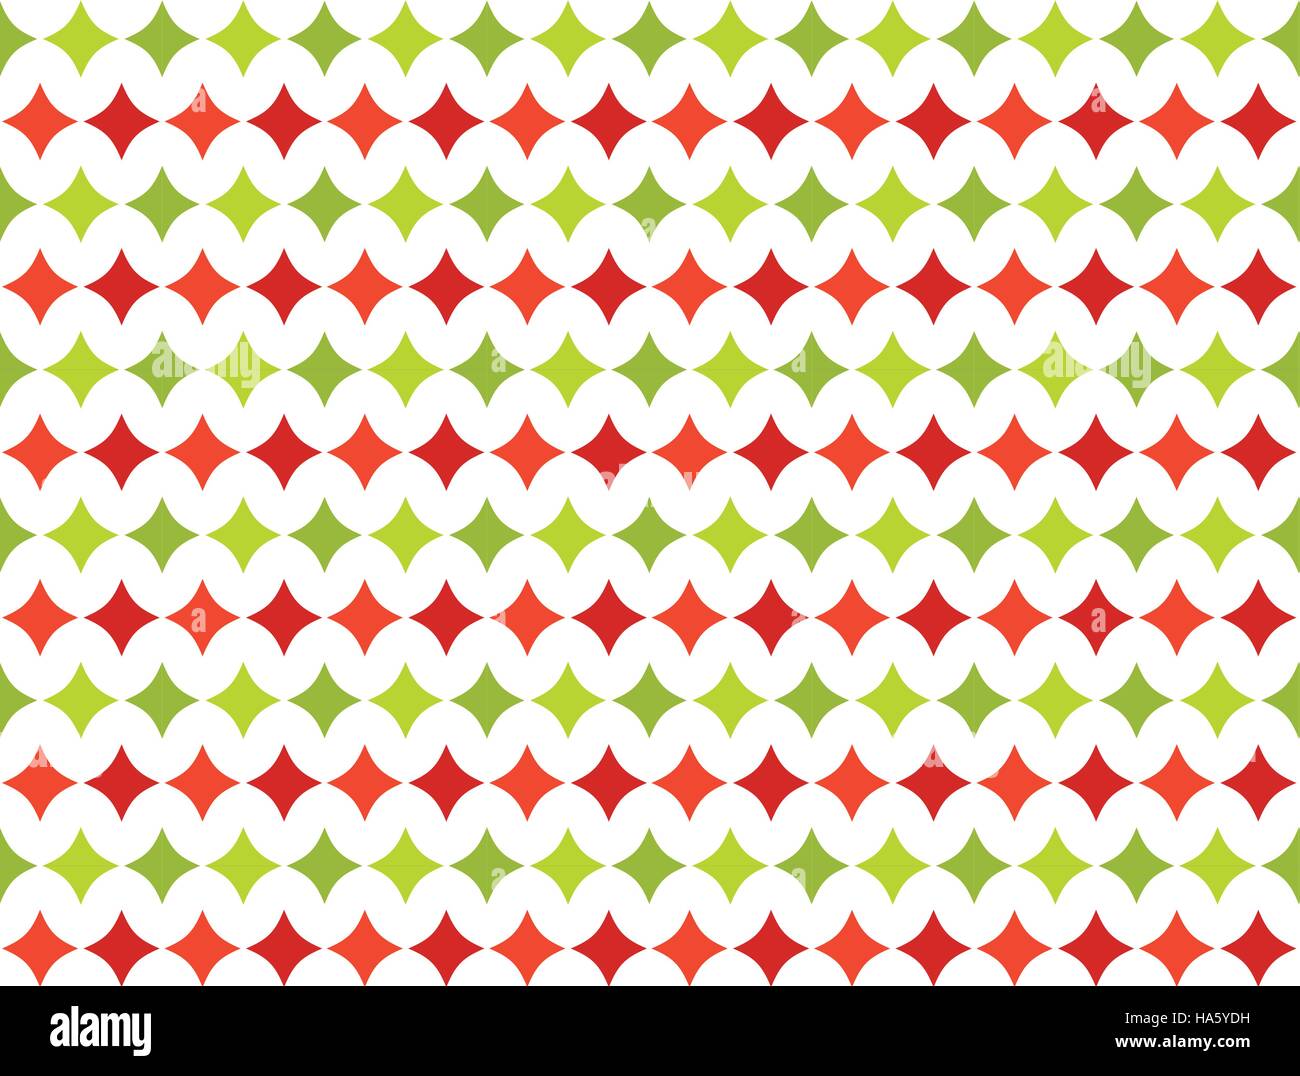 La Stella Di Natale Film.8k Film Risoluzione Orizzontale Di Colore Rosso E Verde Stella Di Natale Di Texture Di Sfondo Della Carta Immagine E Vettoriale Alamy